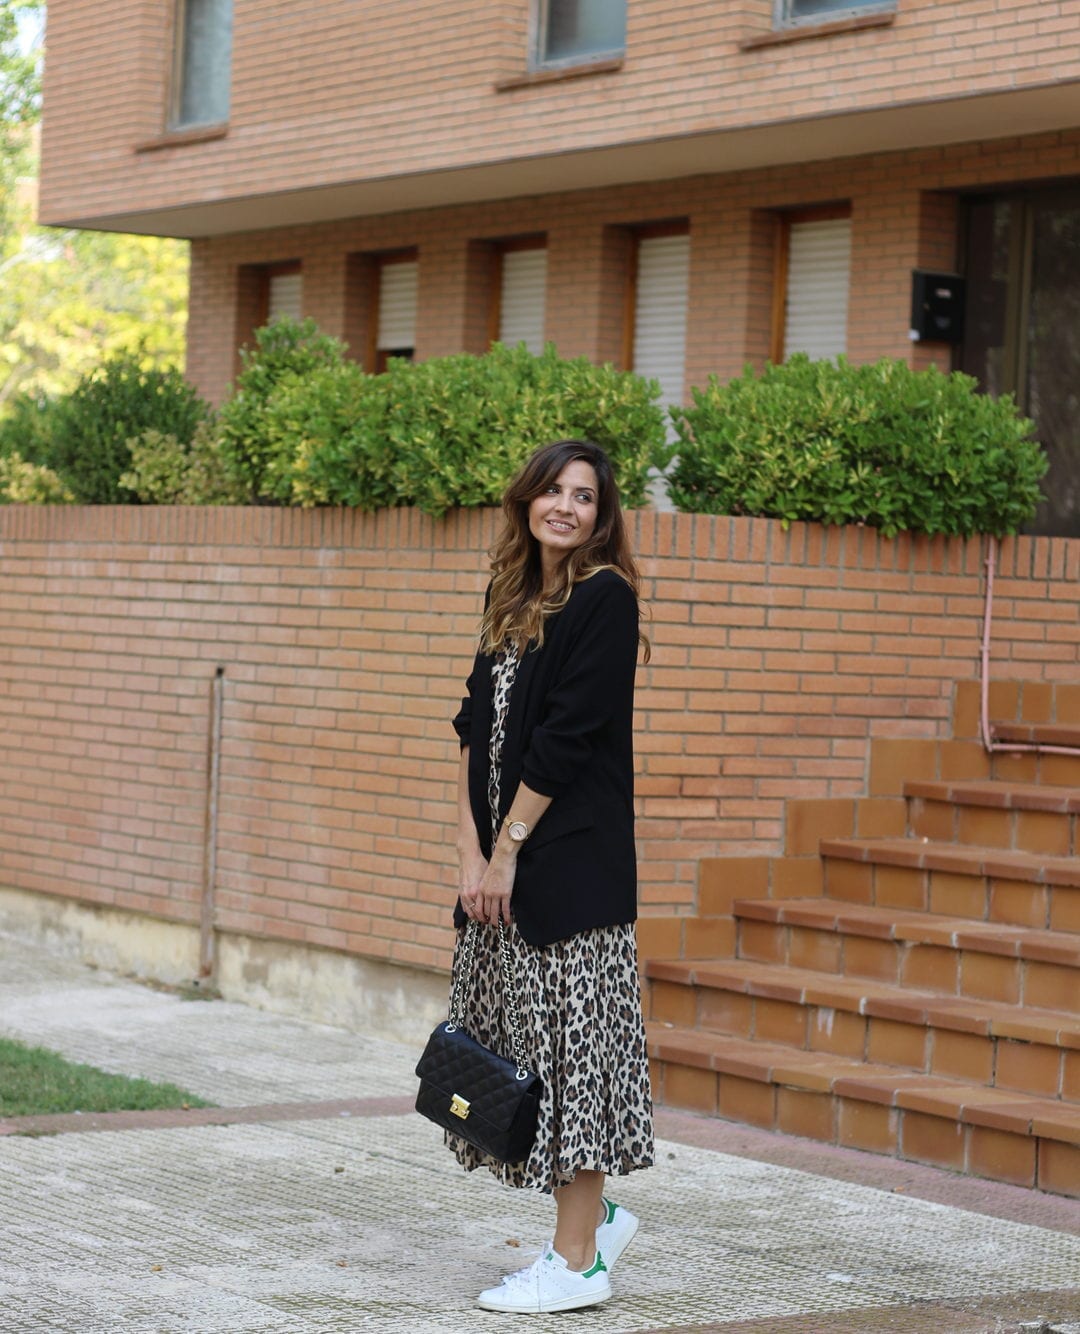 cómo combinar vestido animal print - blogger vestido leopardo